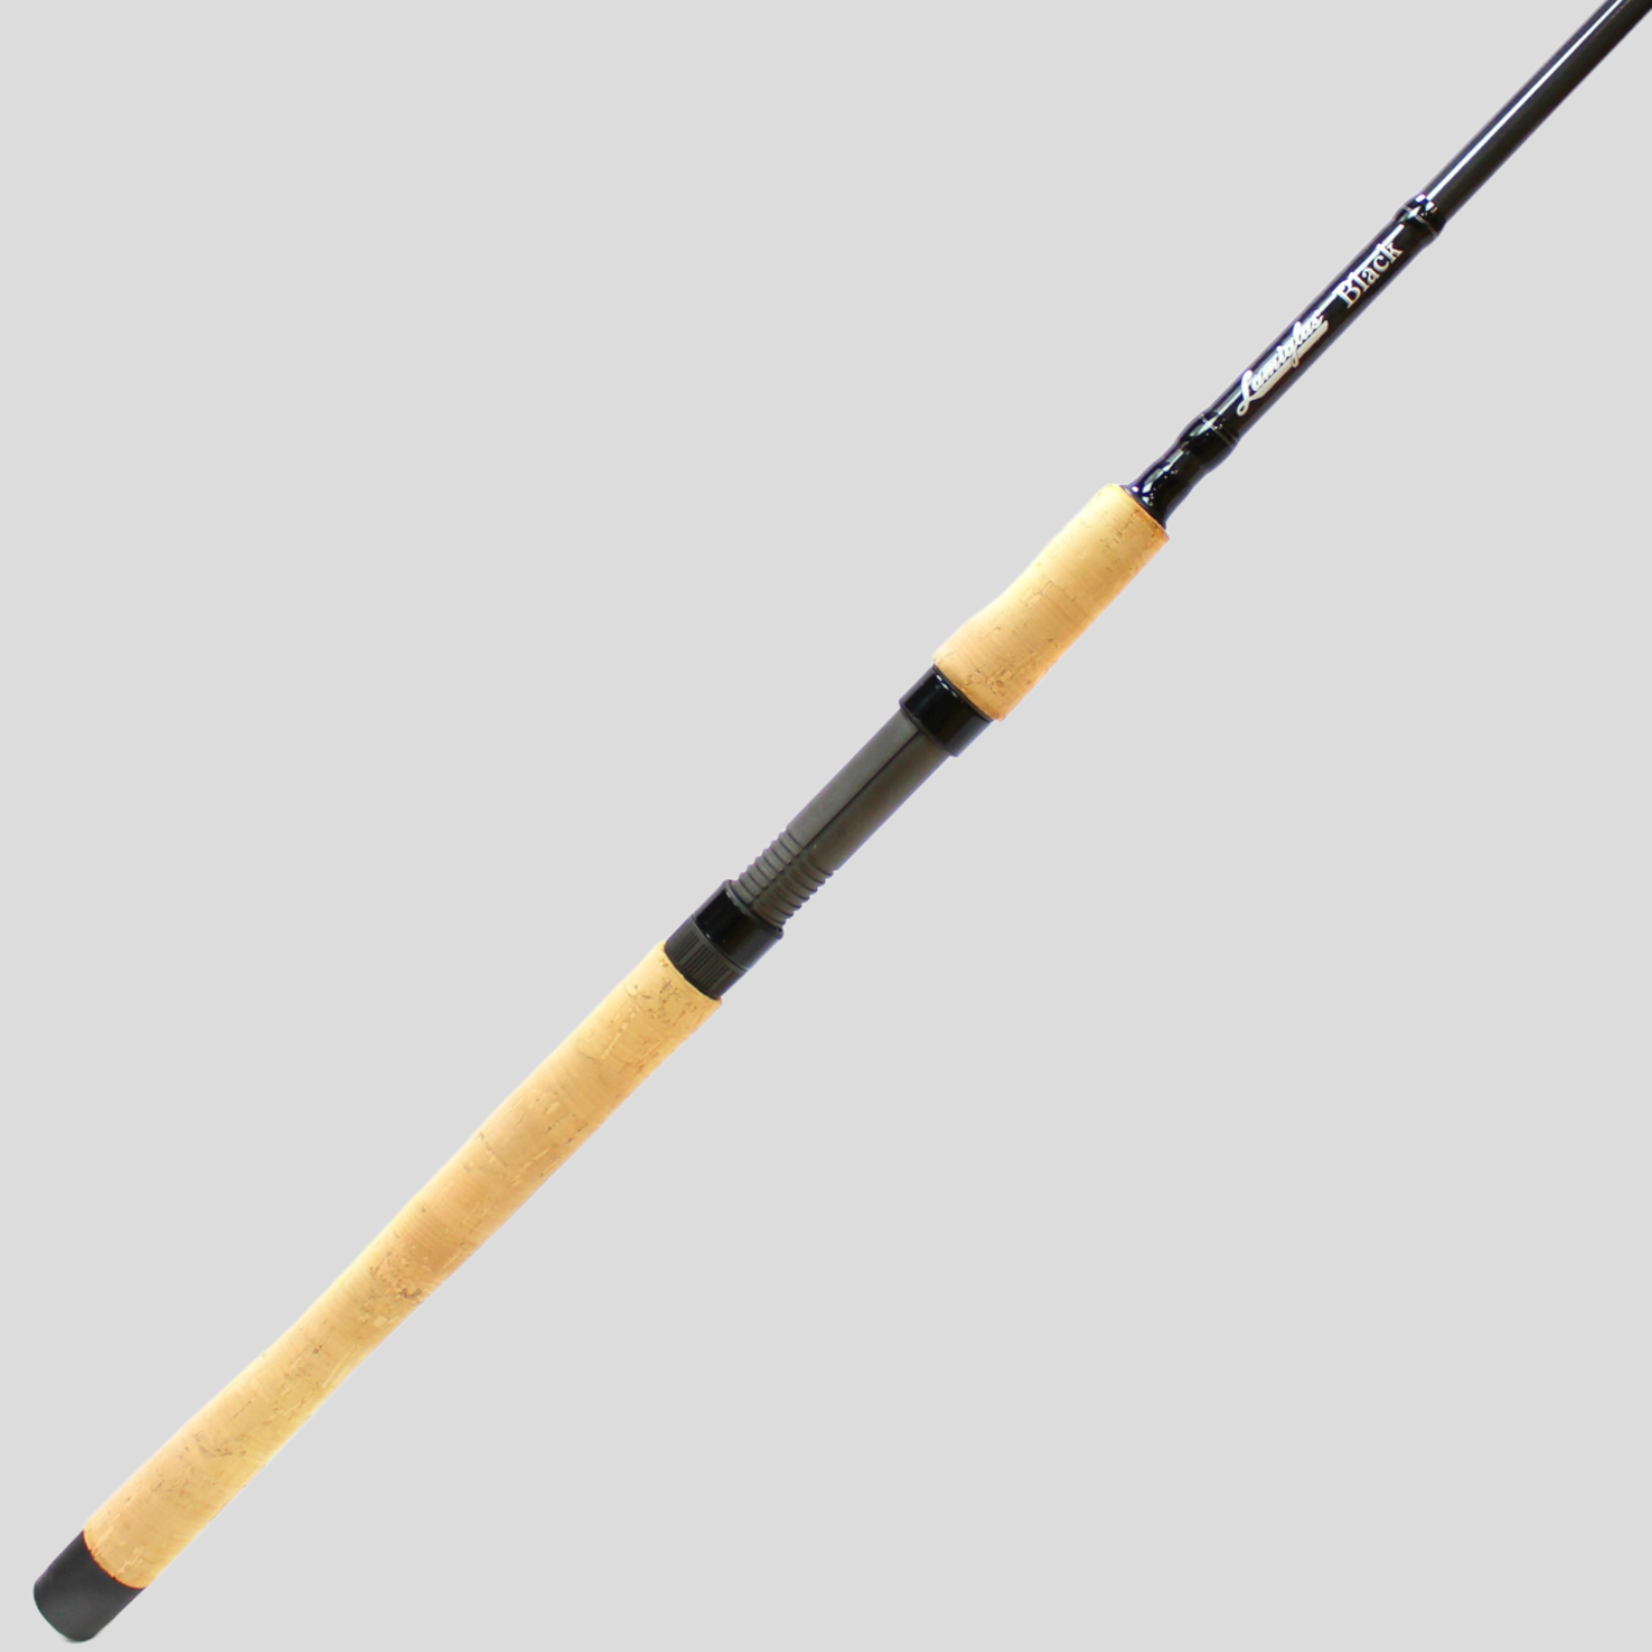 Lamiglas G1000 Pro Alaska Edition Spinning Rod FishUSA, 45% OFF